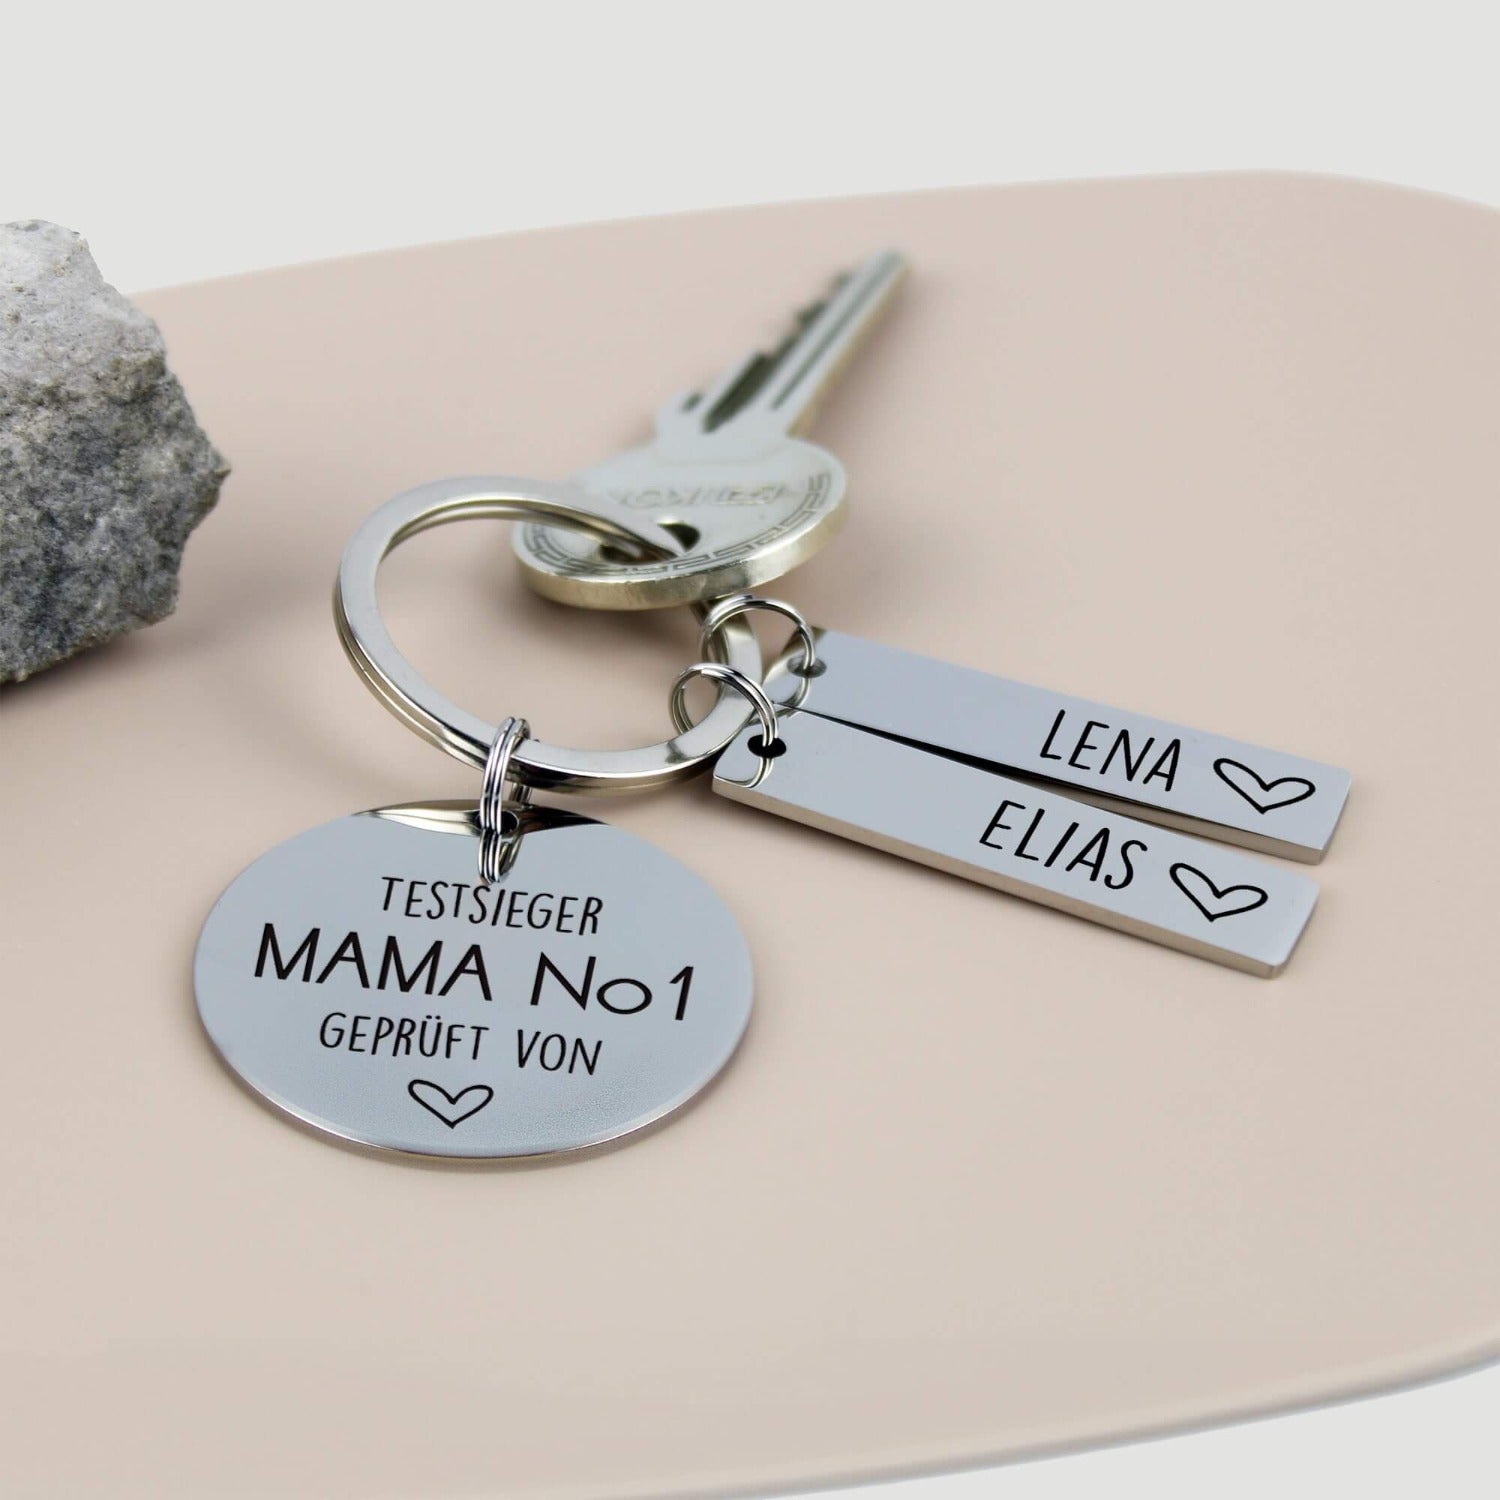 Bester Muttertagsgeschenk - Testsieger Mama No. 1 geprüft von - Personalisierter Edelstahl Schlüsselanhänger mit Namensanhängern-Create4me